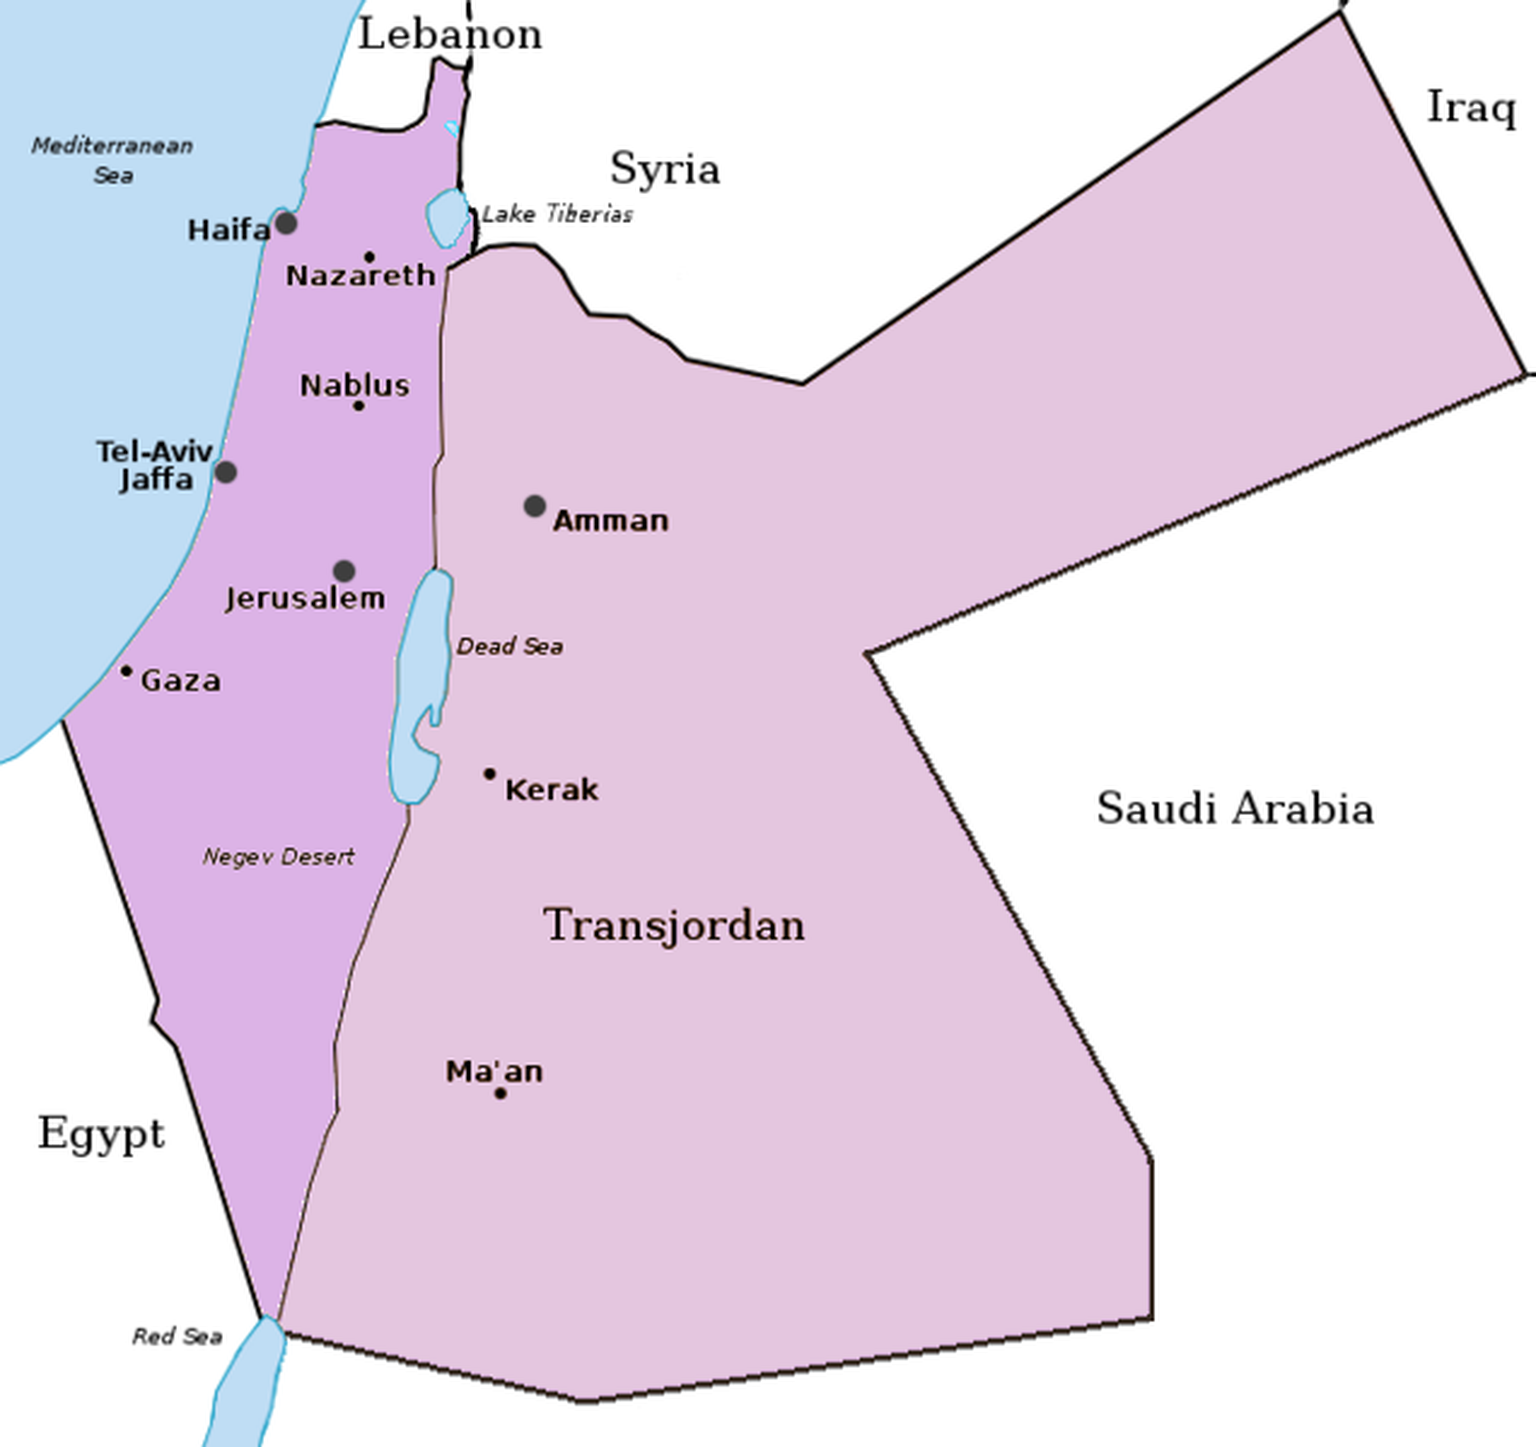 Nach der Teilung des britischen Mandatsgebietes Palästina 1923: links Palästina (jetzt auf Cisjordanien begrenzt), rechts das Emirat Transjordanien
https://commons.wikimedia.org/w/index.php?curid=5959 ...